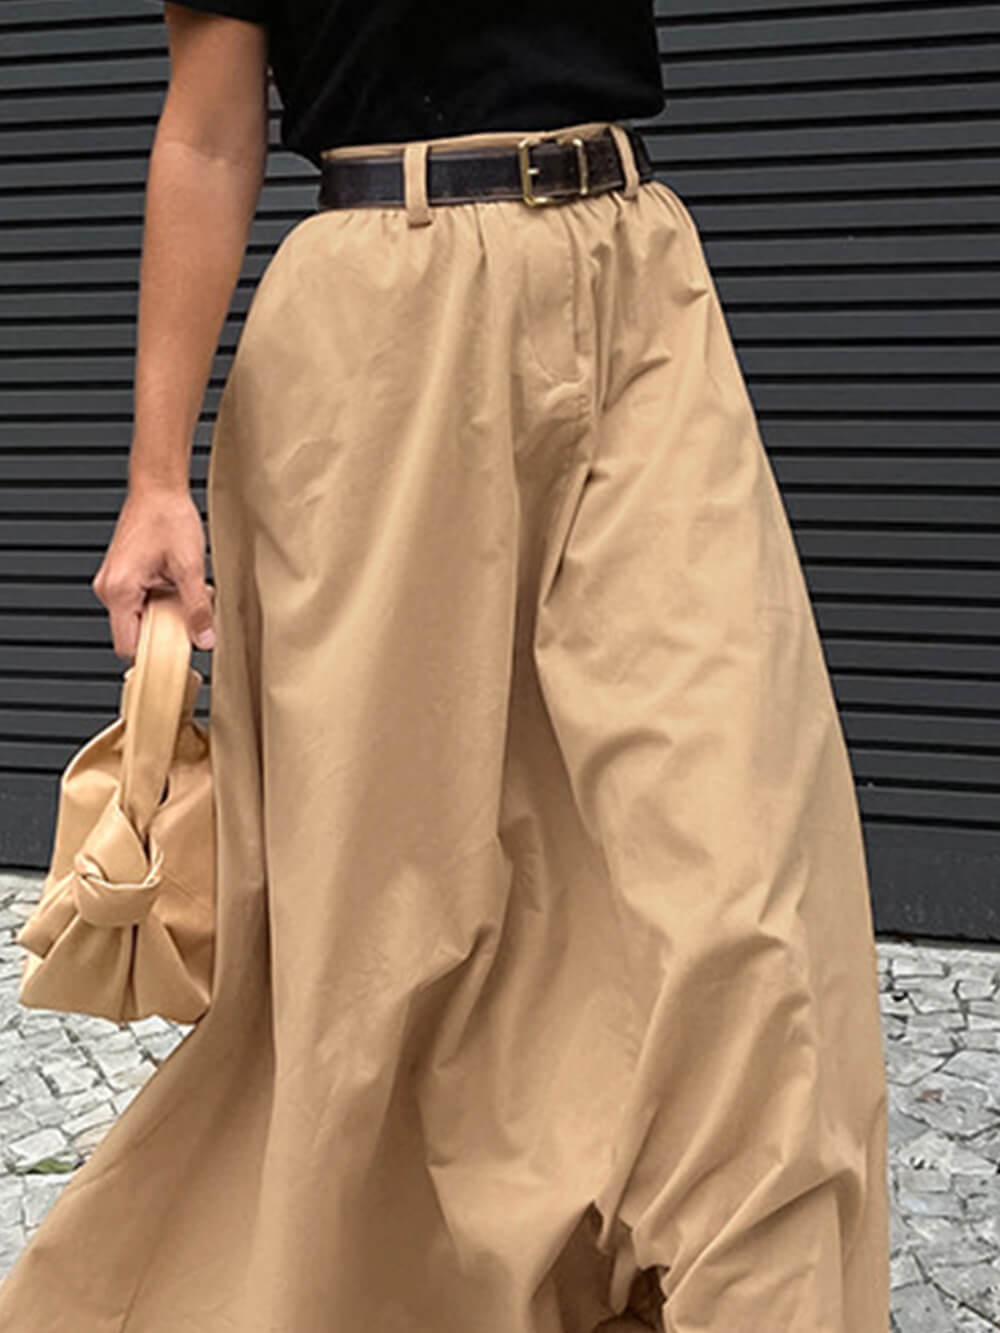 חצאית ארוכה משוחררת בסגנון רחוב אישי